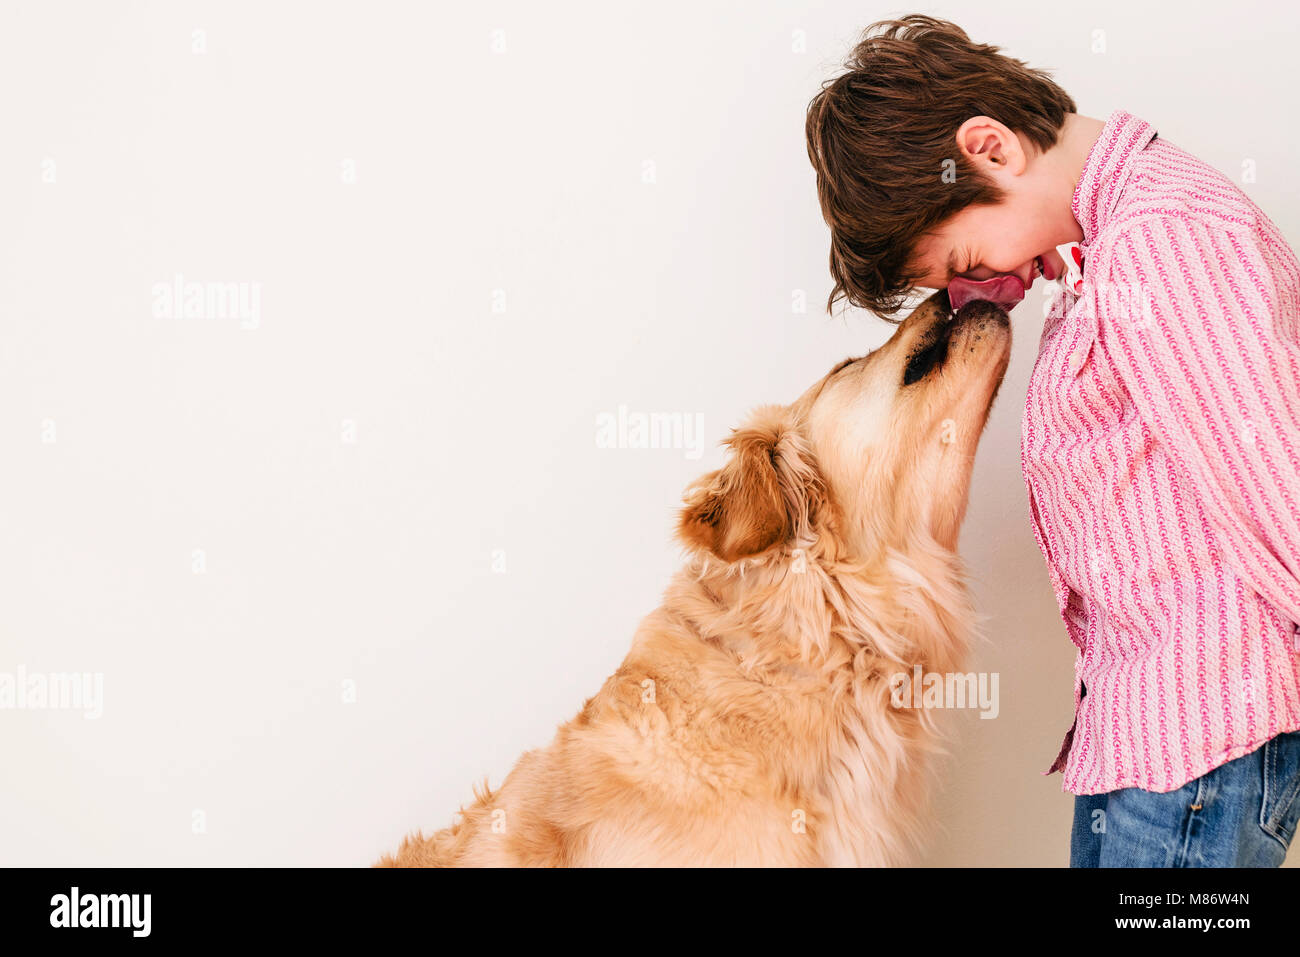 Golden retriever dog licking a boy's face Stock Photo